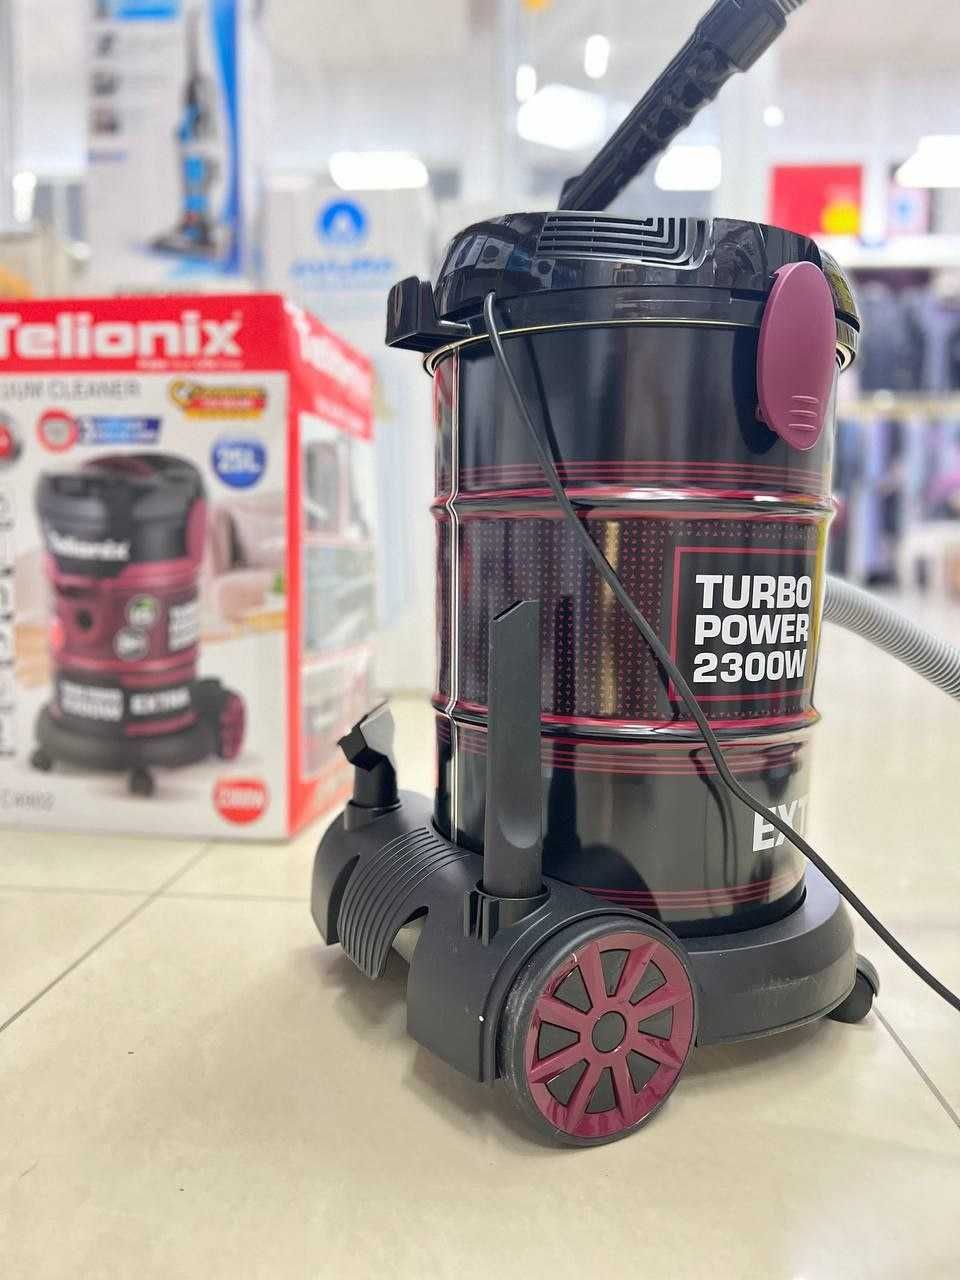 Хозяйственный пылесос от TELIONIX
Сделано в Турции